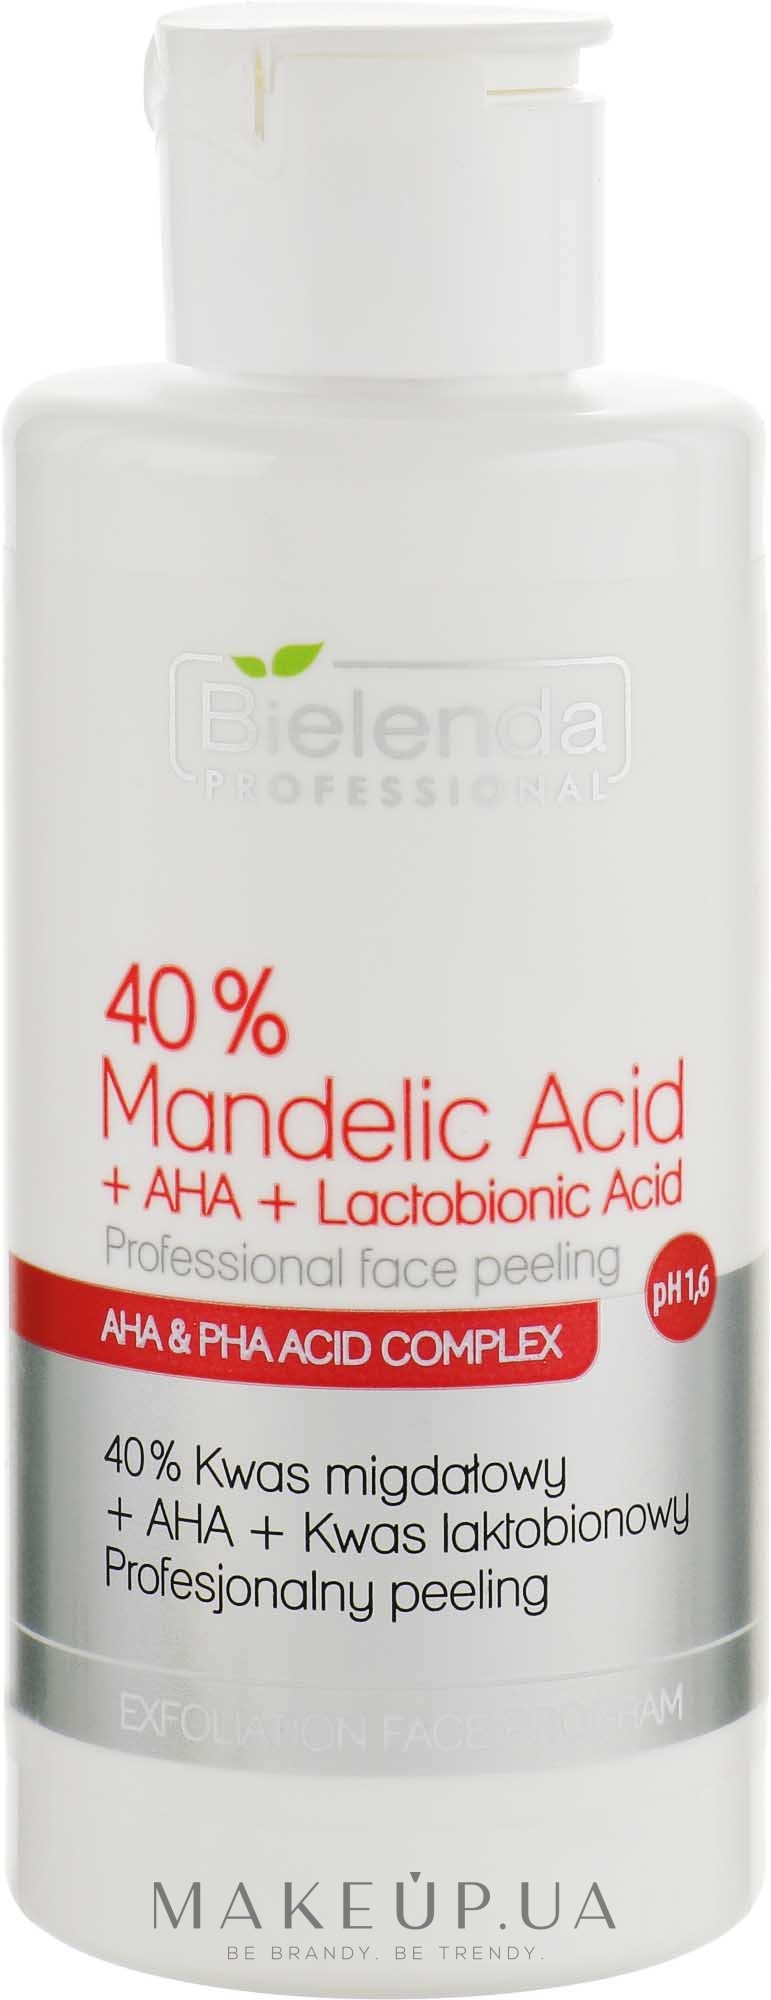 Профессиональный пилинг "40% Миндальная кислота + АНА + Лактобионовая кислота" - Bielenda Professional Exfoliation Face Program 40% Mandelic Acid + AHA + Lactobionic Acid — фото 150g